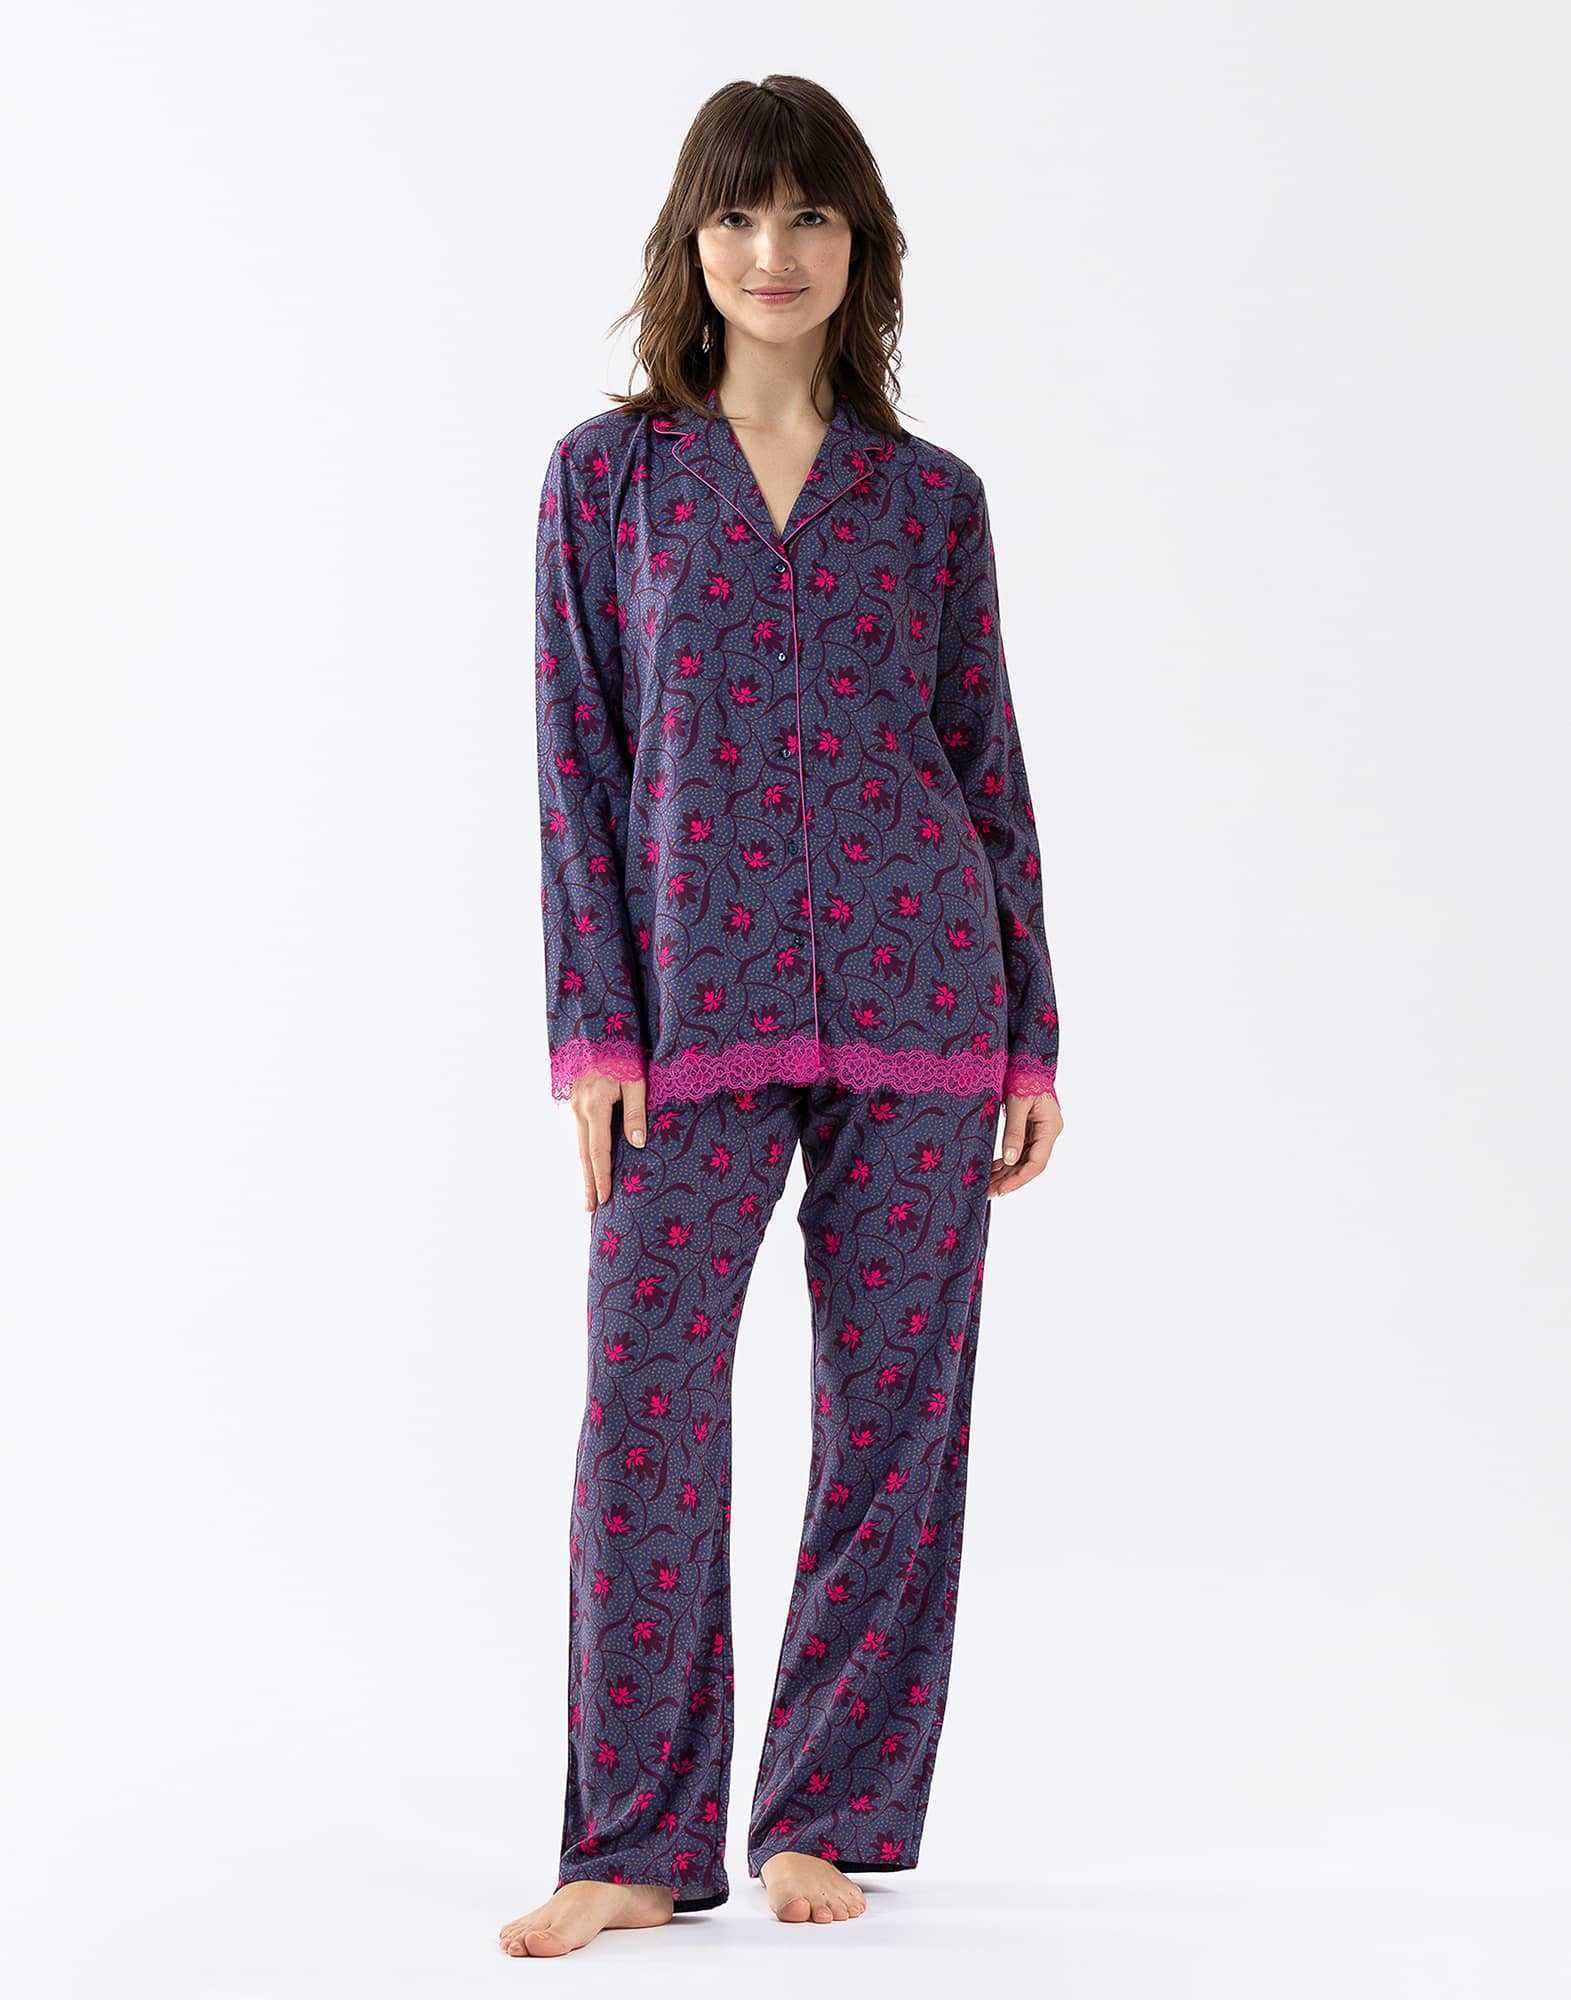 Pyjama en viscose imprimée et finitions dentelle  ALBA 606 multico | Lingerie le Chat